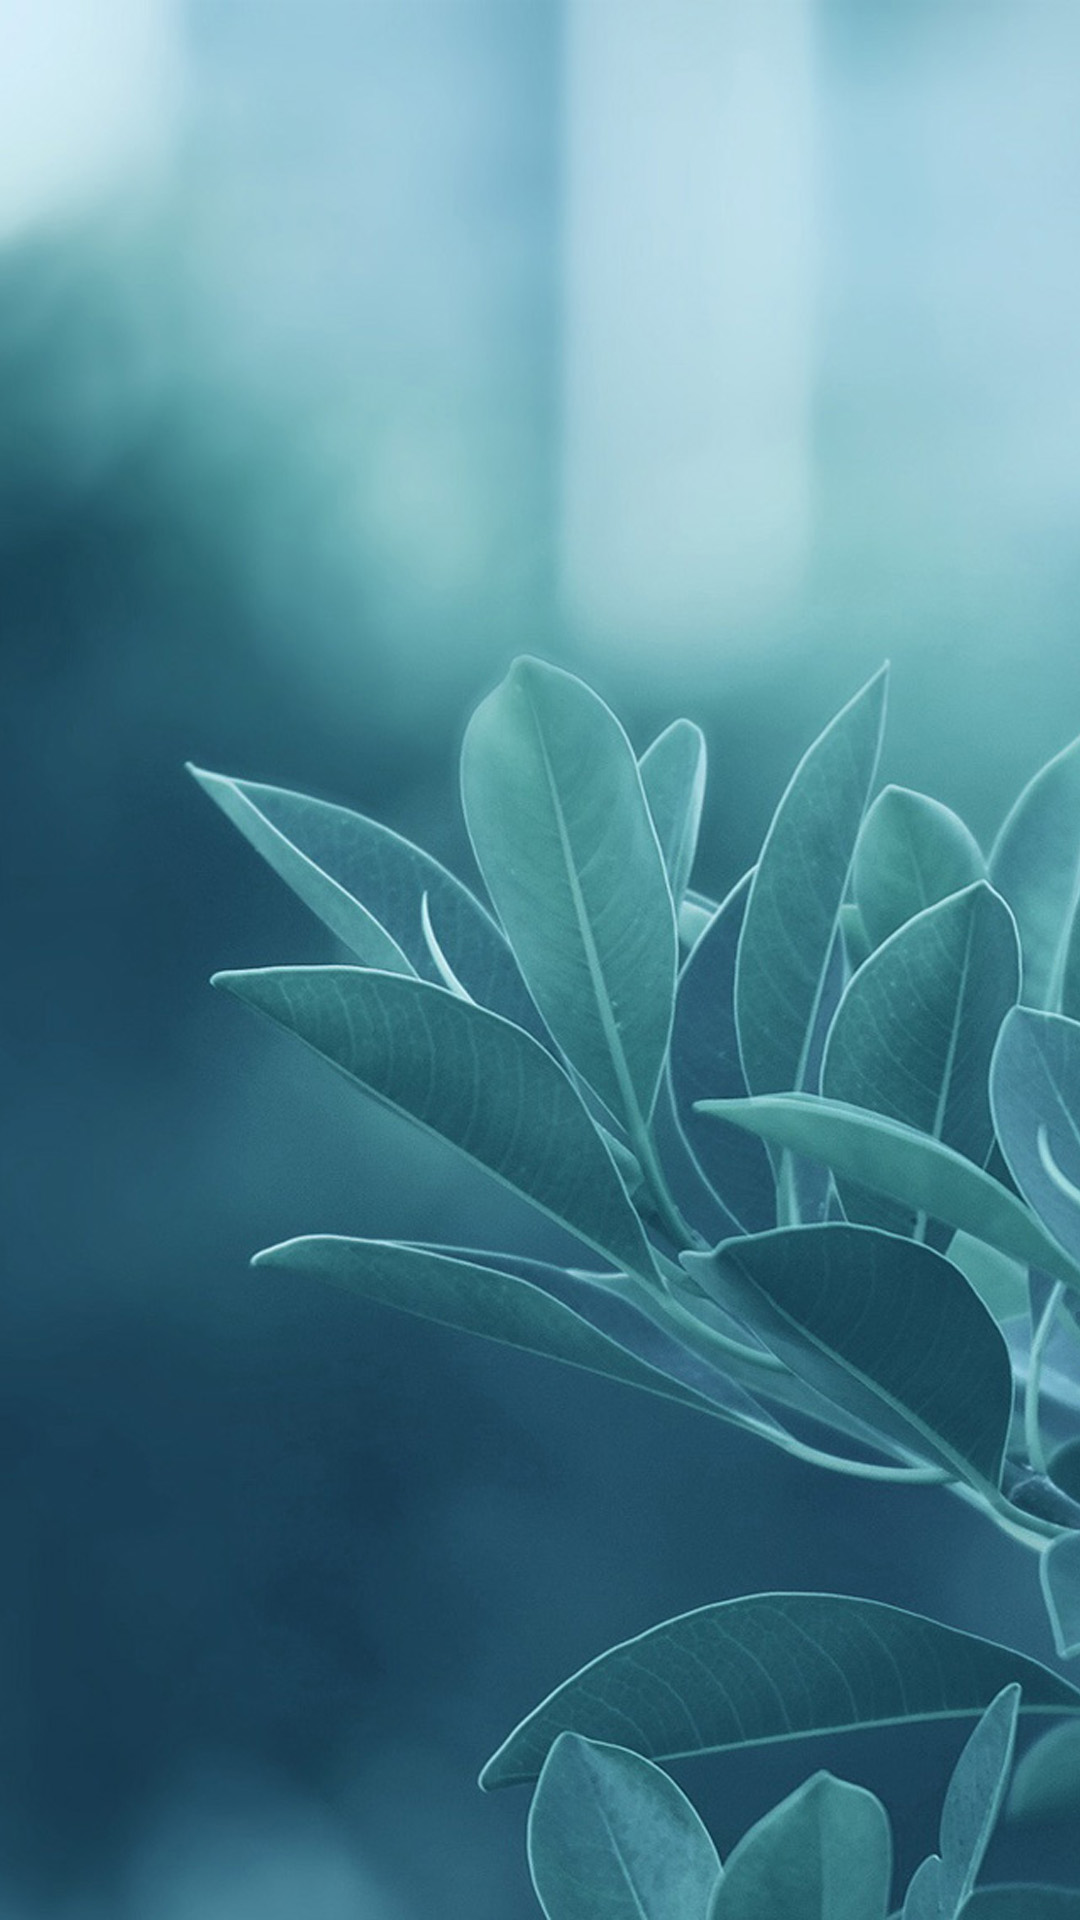 fonds d'écran mobiles hd pour samsung,bleu,vert,feuille,plante,turquoise